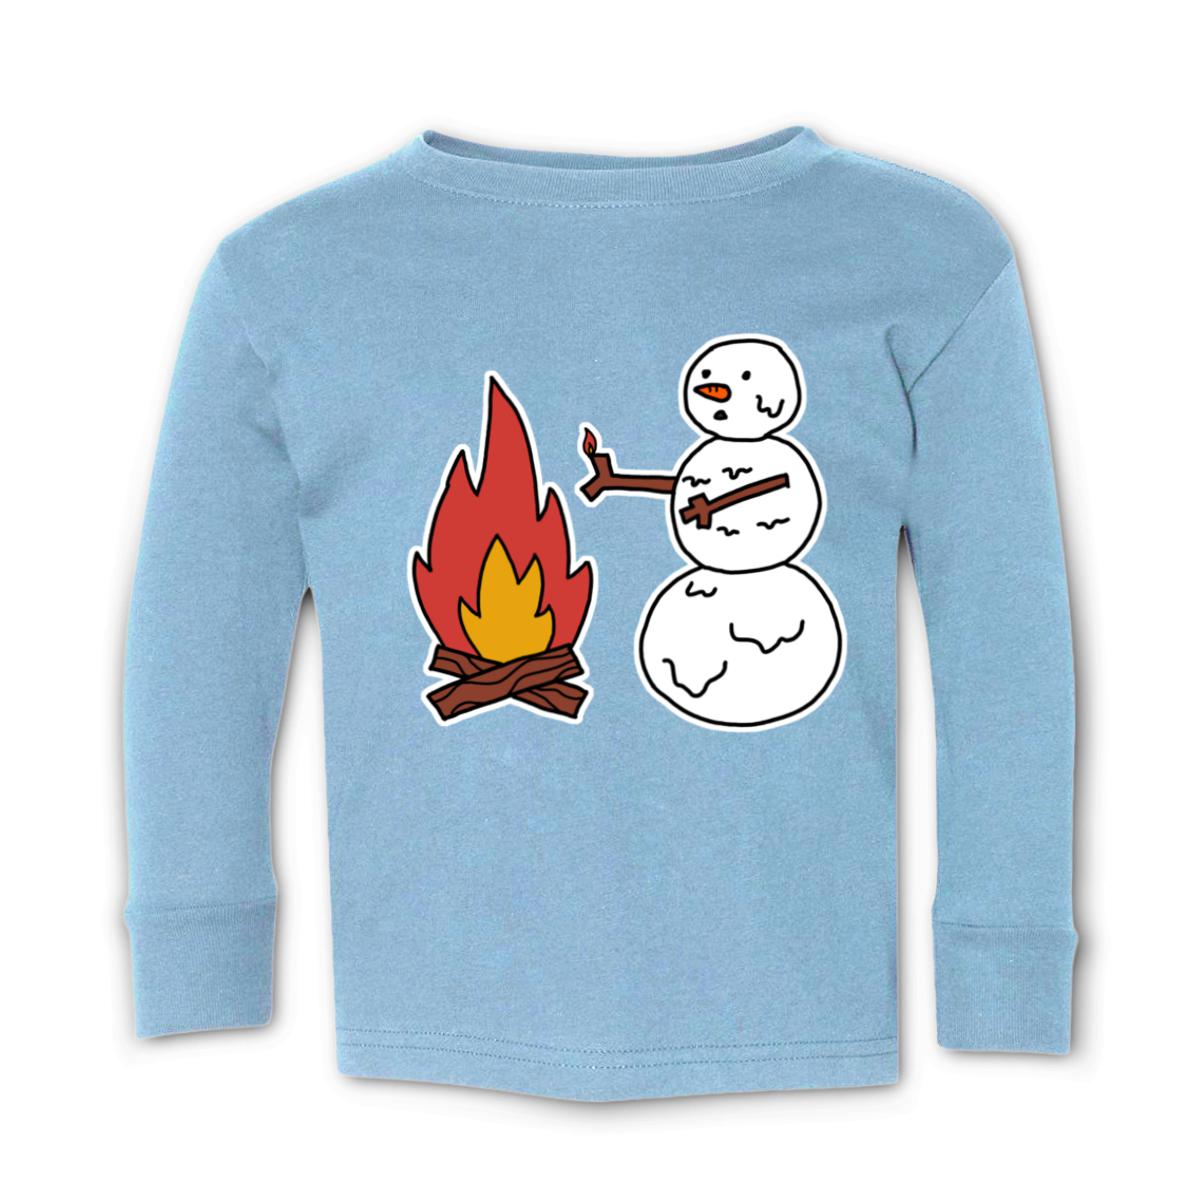 Snowman Keeping Warm Toddler Long Sleeve Tee 2T light-blue